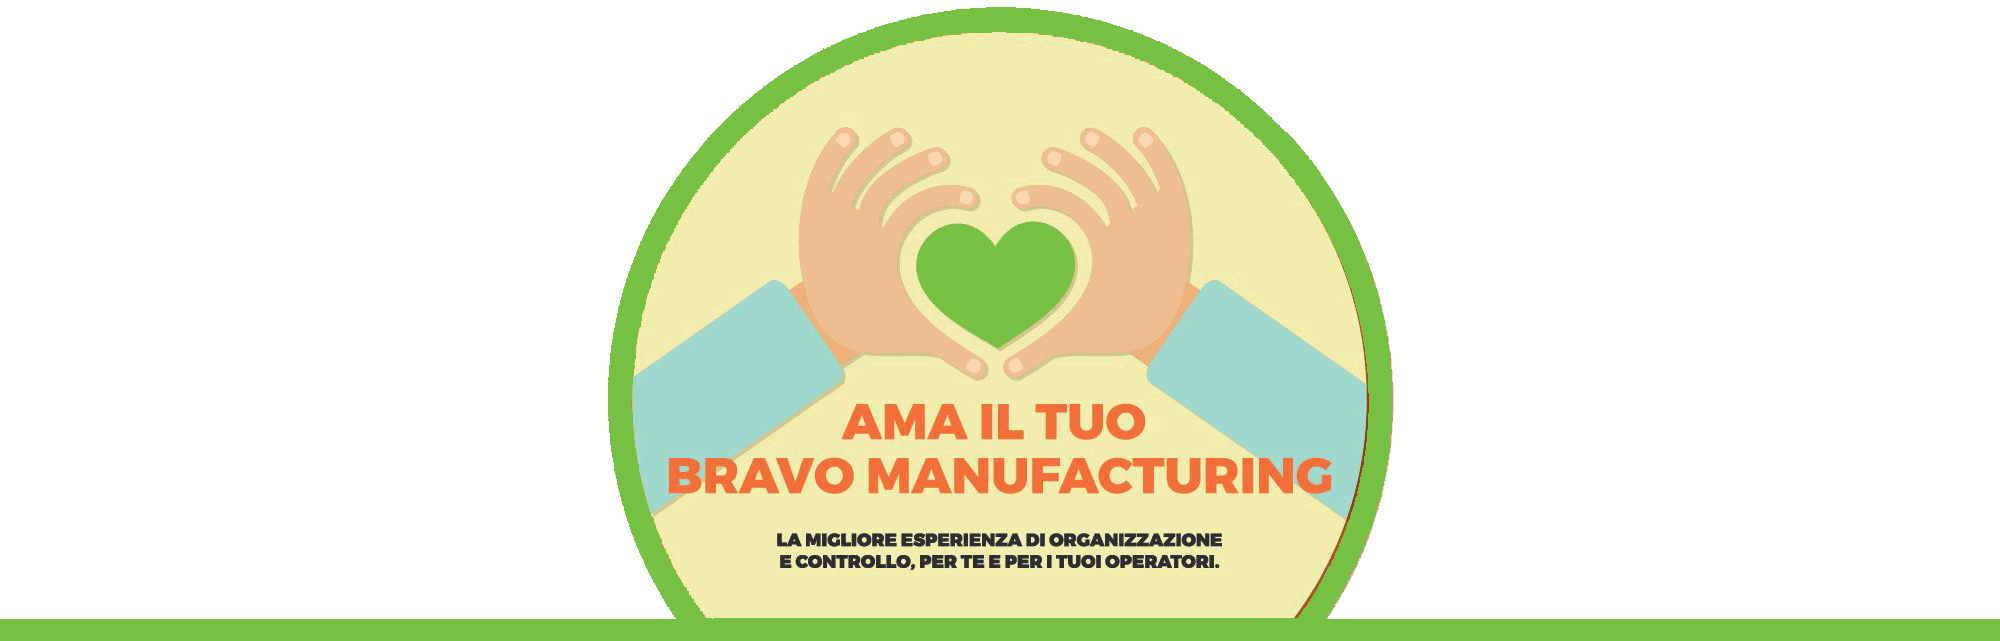 ama-il-tuo-bravo-manufacturing-foto-tonda_green